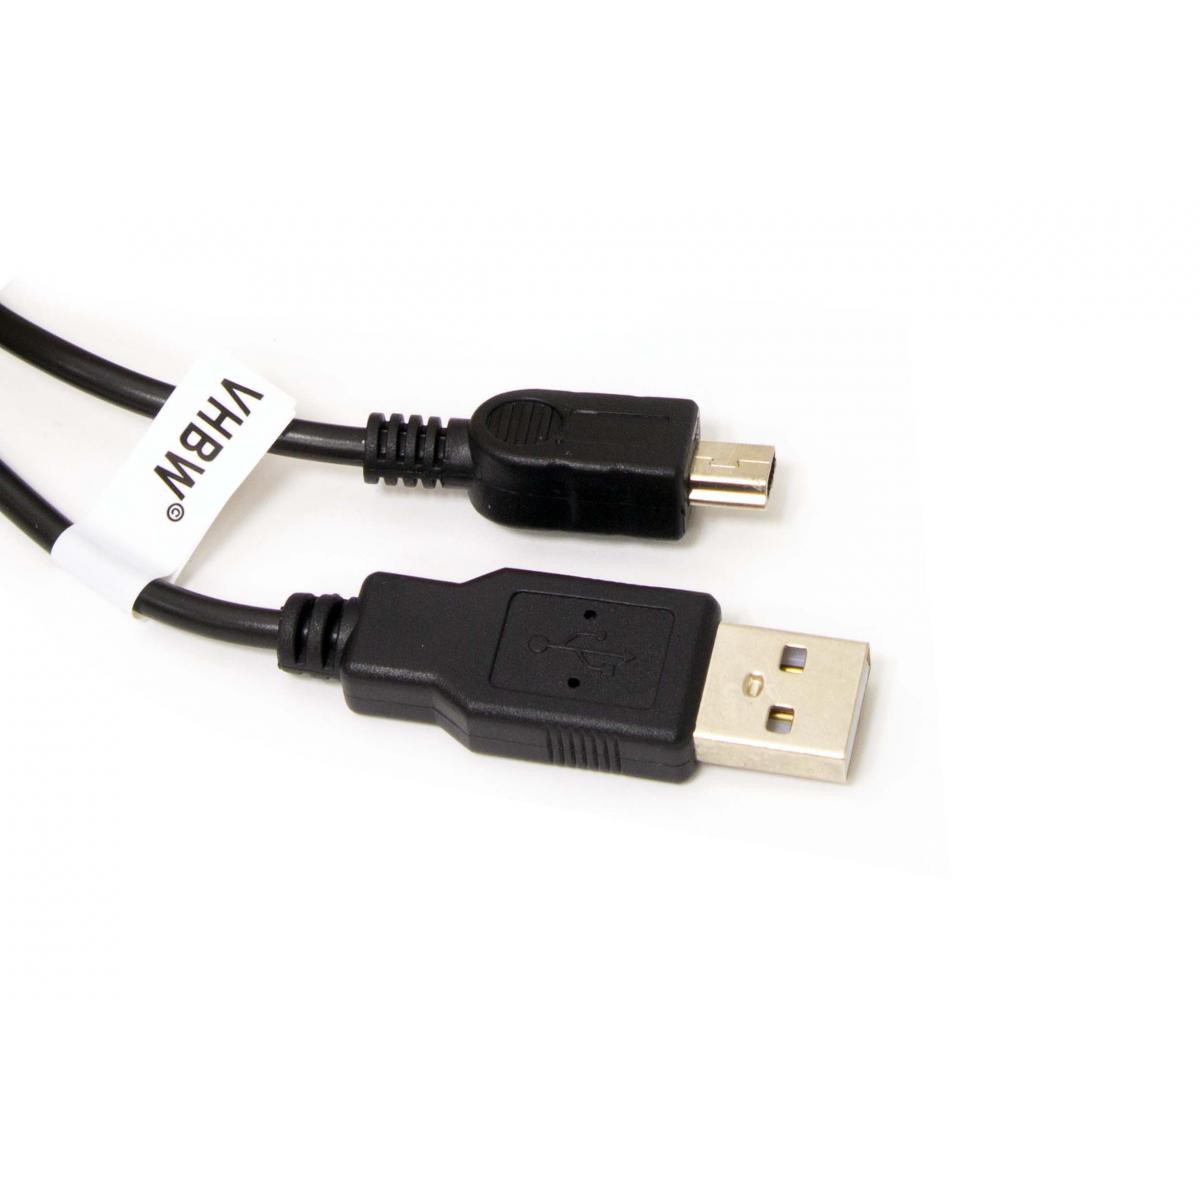 Vhbw - Câble USB A-Mini-B 5 pôles noir/black, longueur 1m, pour JVC GR-DVL522, GR-DVL720, GR-DVL725 etc. - Câble antenne